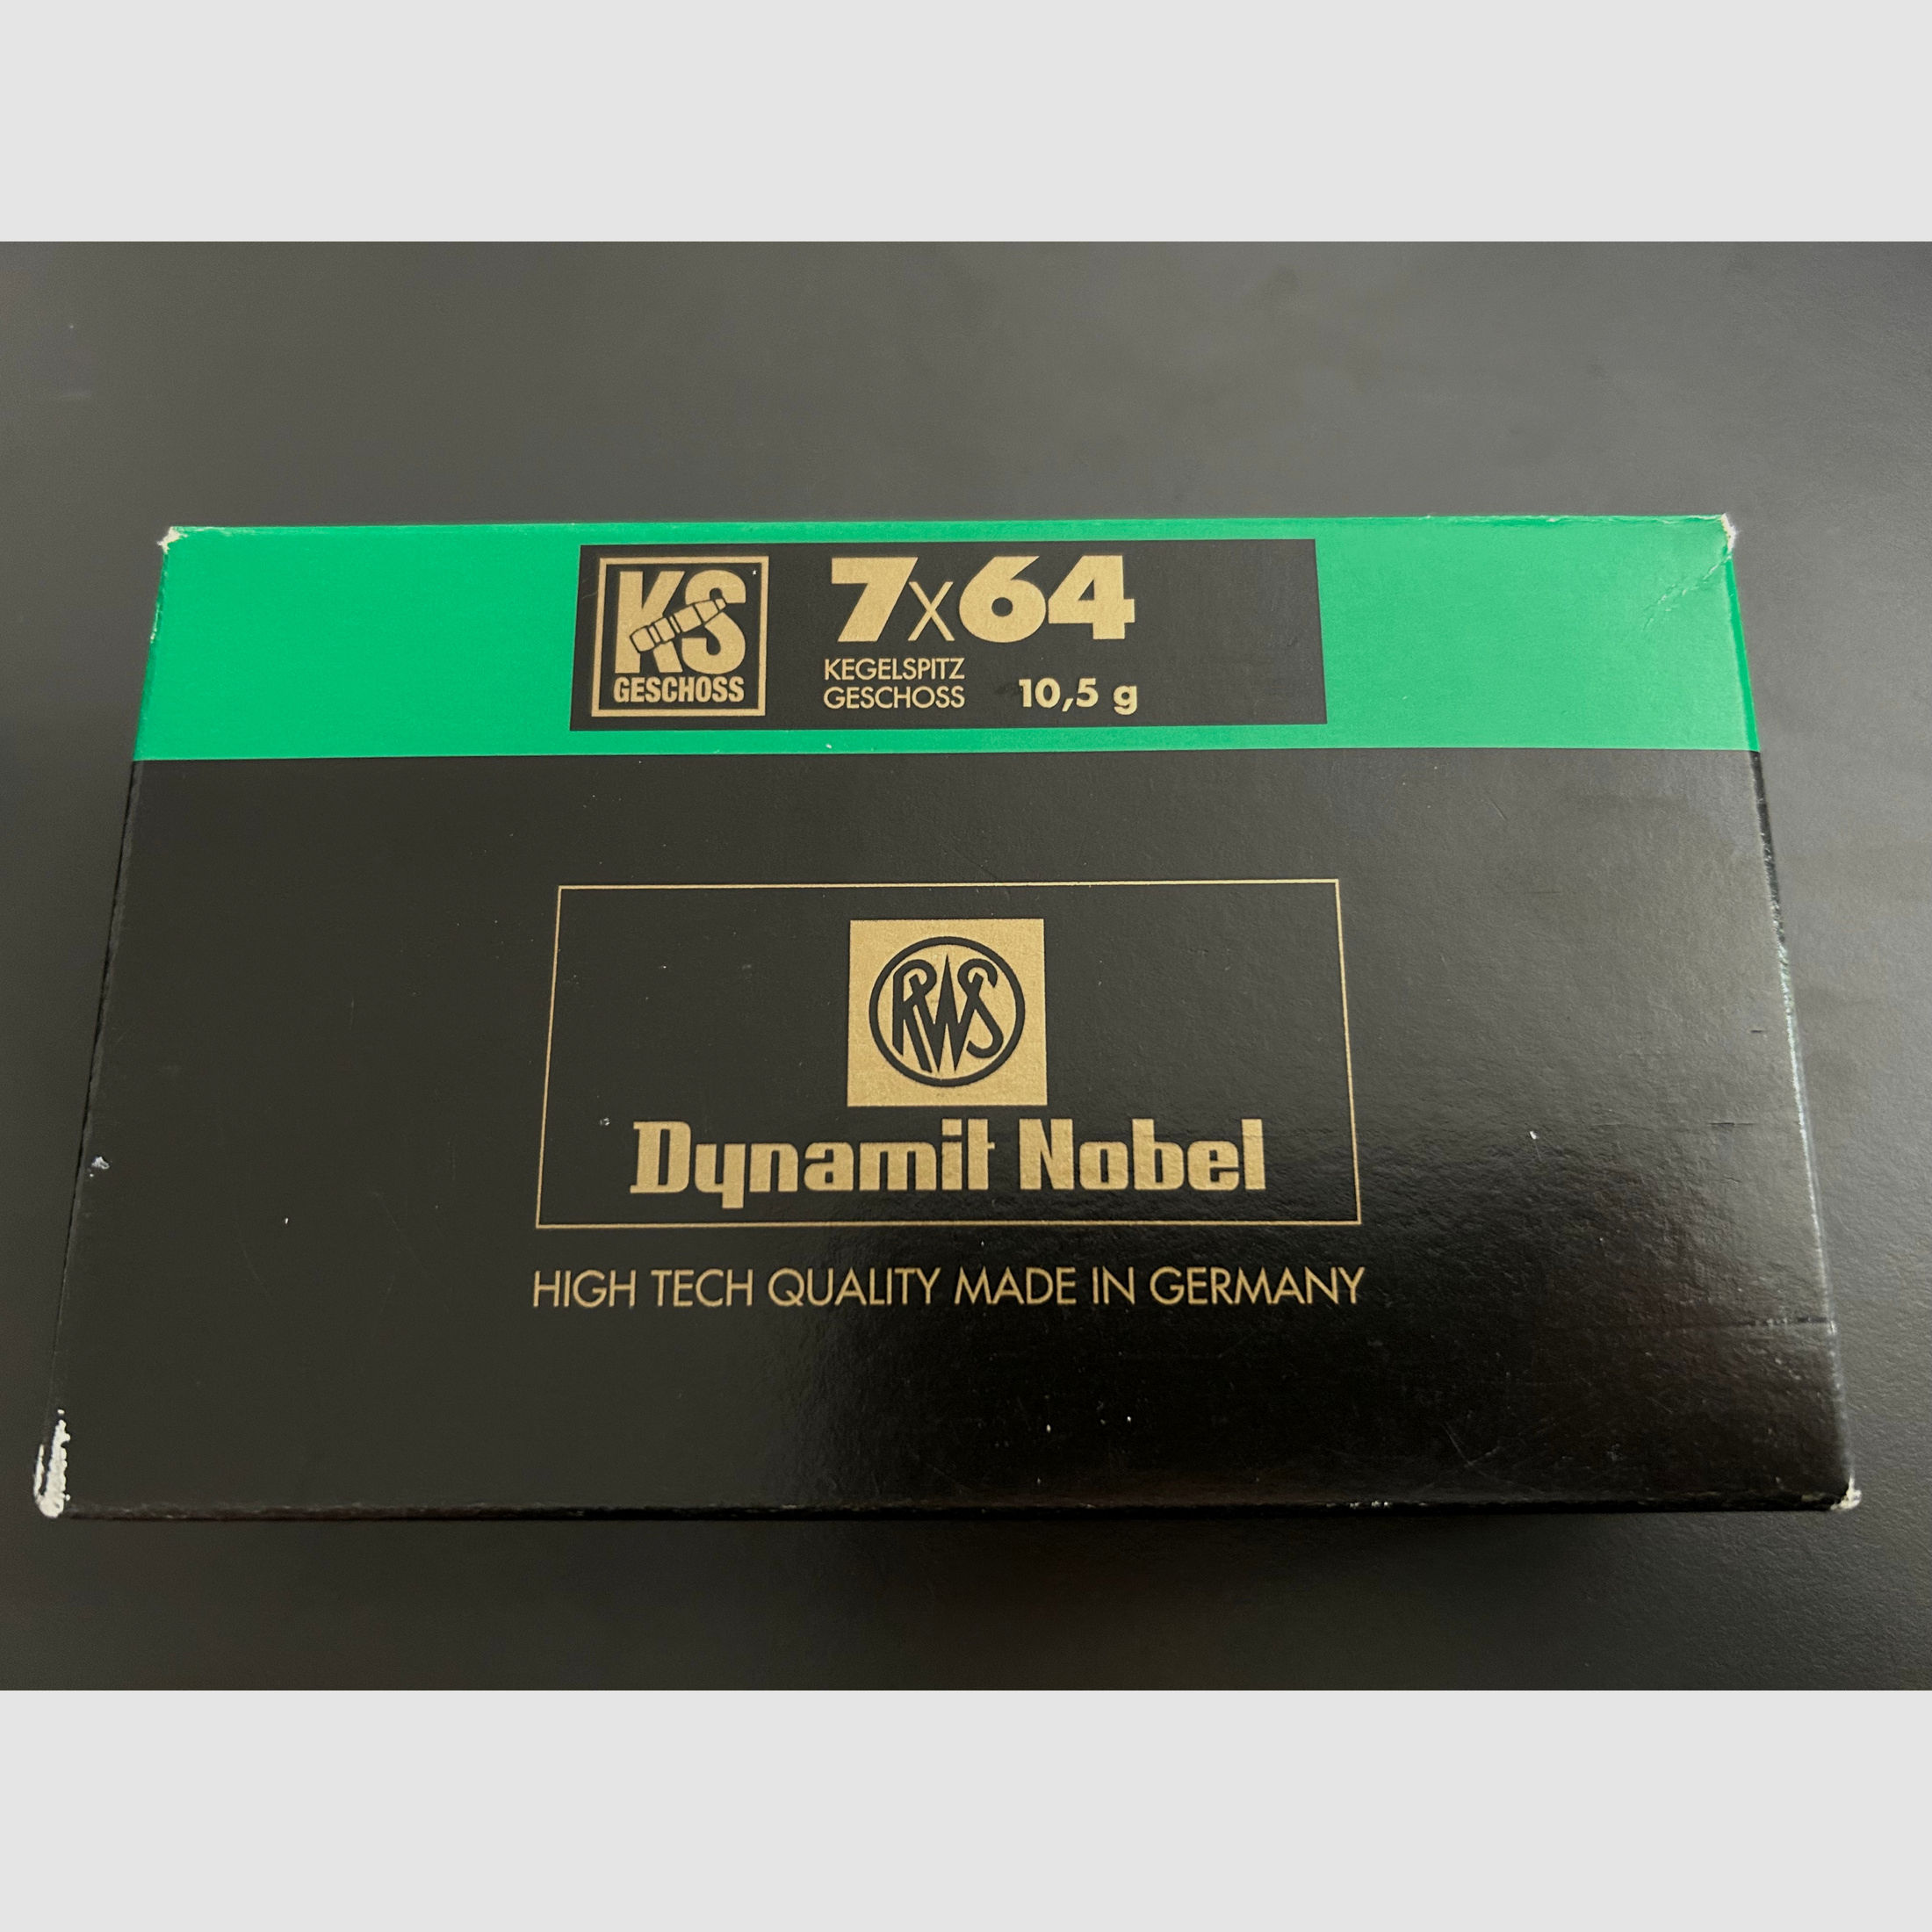 RWS Dynamite Nobel Kegelspitz Geschoss 7x64 10,5  20STK